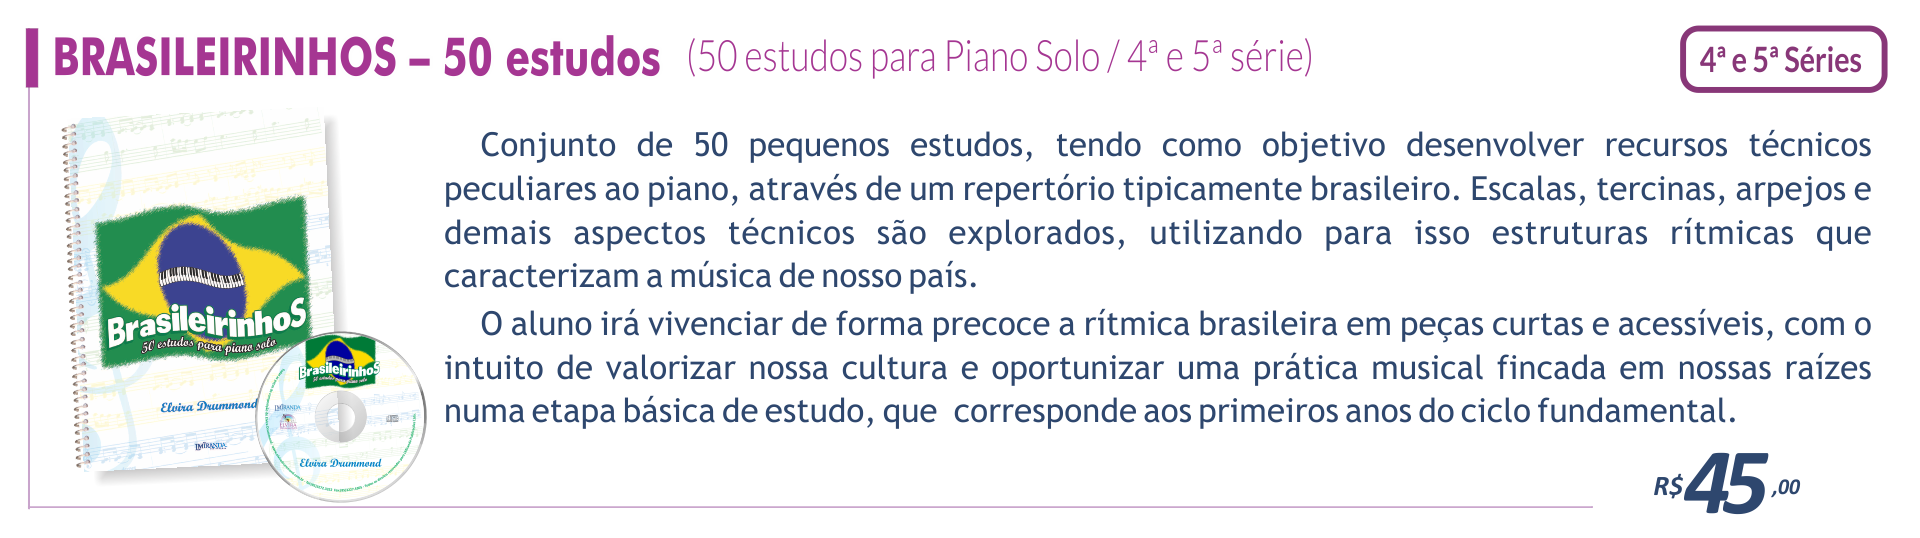 Brasileirinhos - 50 estudos